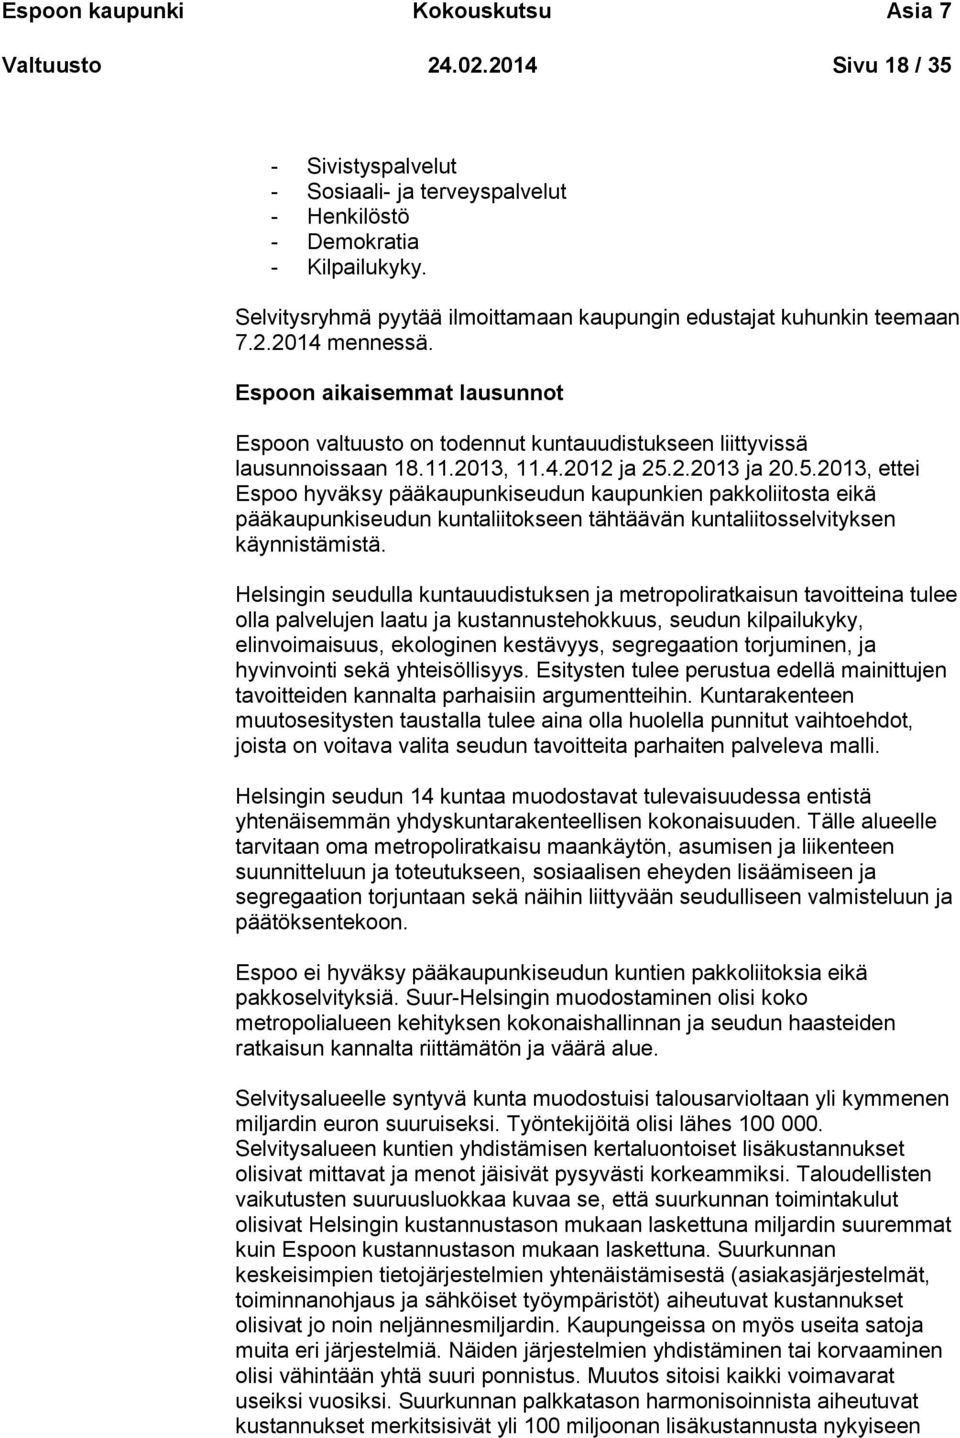 2013, 11.4.2012 ja 25.2.2013 ja 20.5.2013, ettei Espoo hyväksy pääkaupunkiseudun kaupunkien pakkoliitosta eikä pääkaupunkiseudun kuntaliitokseen tähtäävän kuntaliitosselvityksen käynnistämistä.